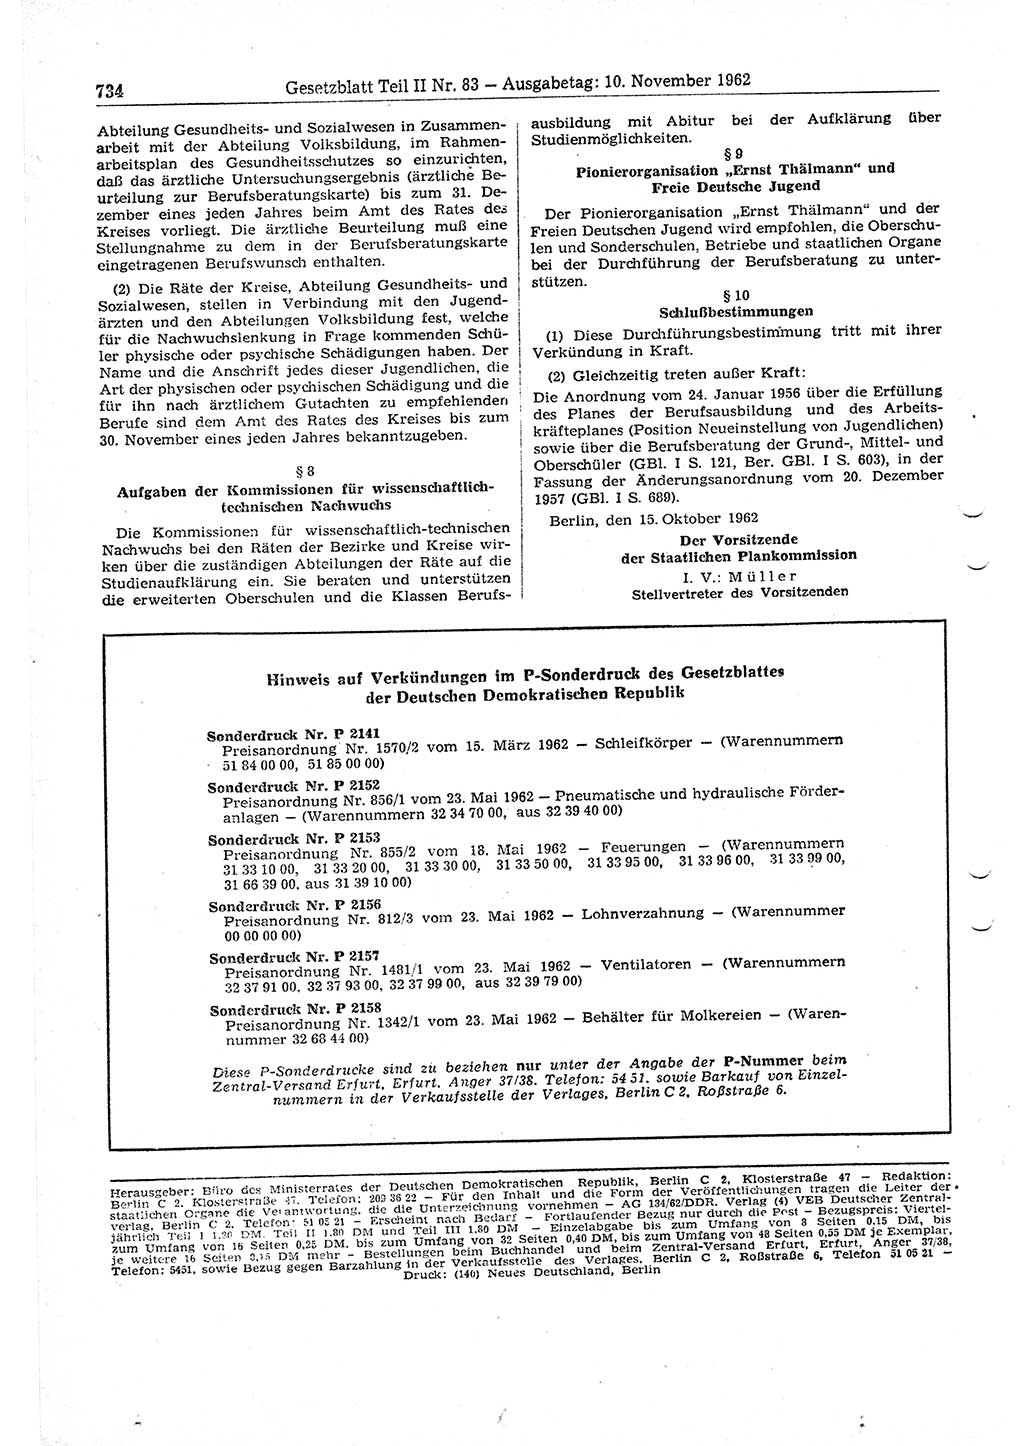 Gesetzblatt (GBl.) der Deutschen Demokratischen Republik (DDR) Teil ⅠⅠ 1962, Seite 734 (GBl. DDR ⅠⅠ 1962, S. 734)